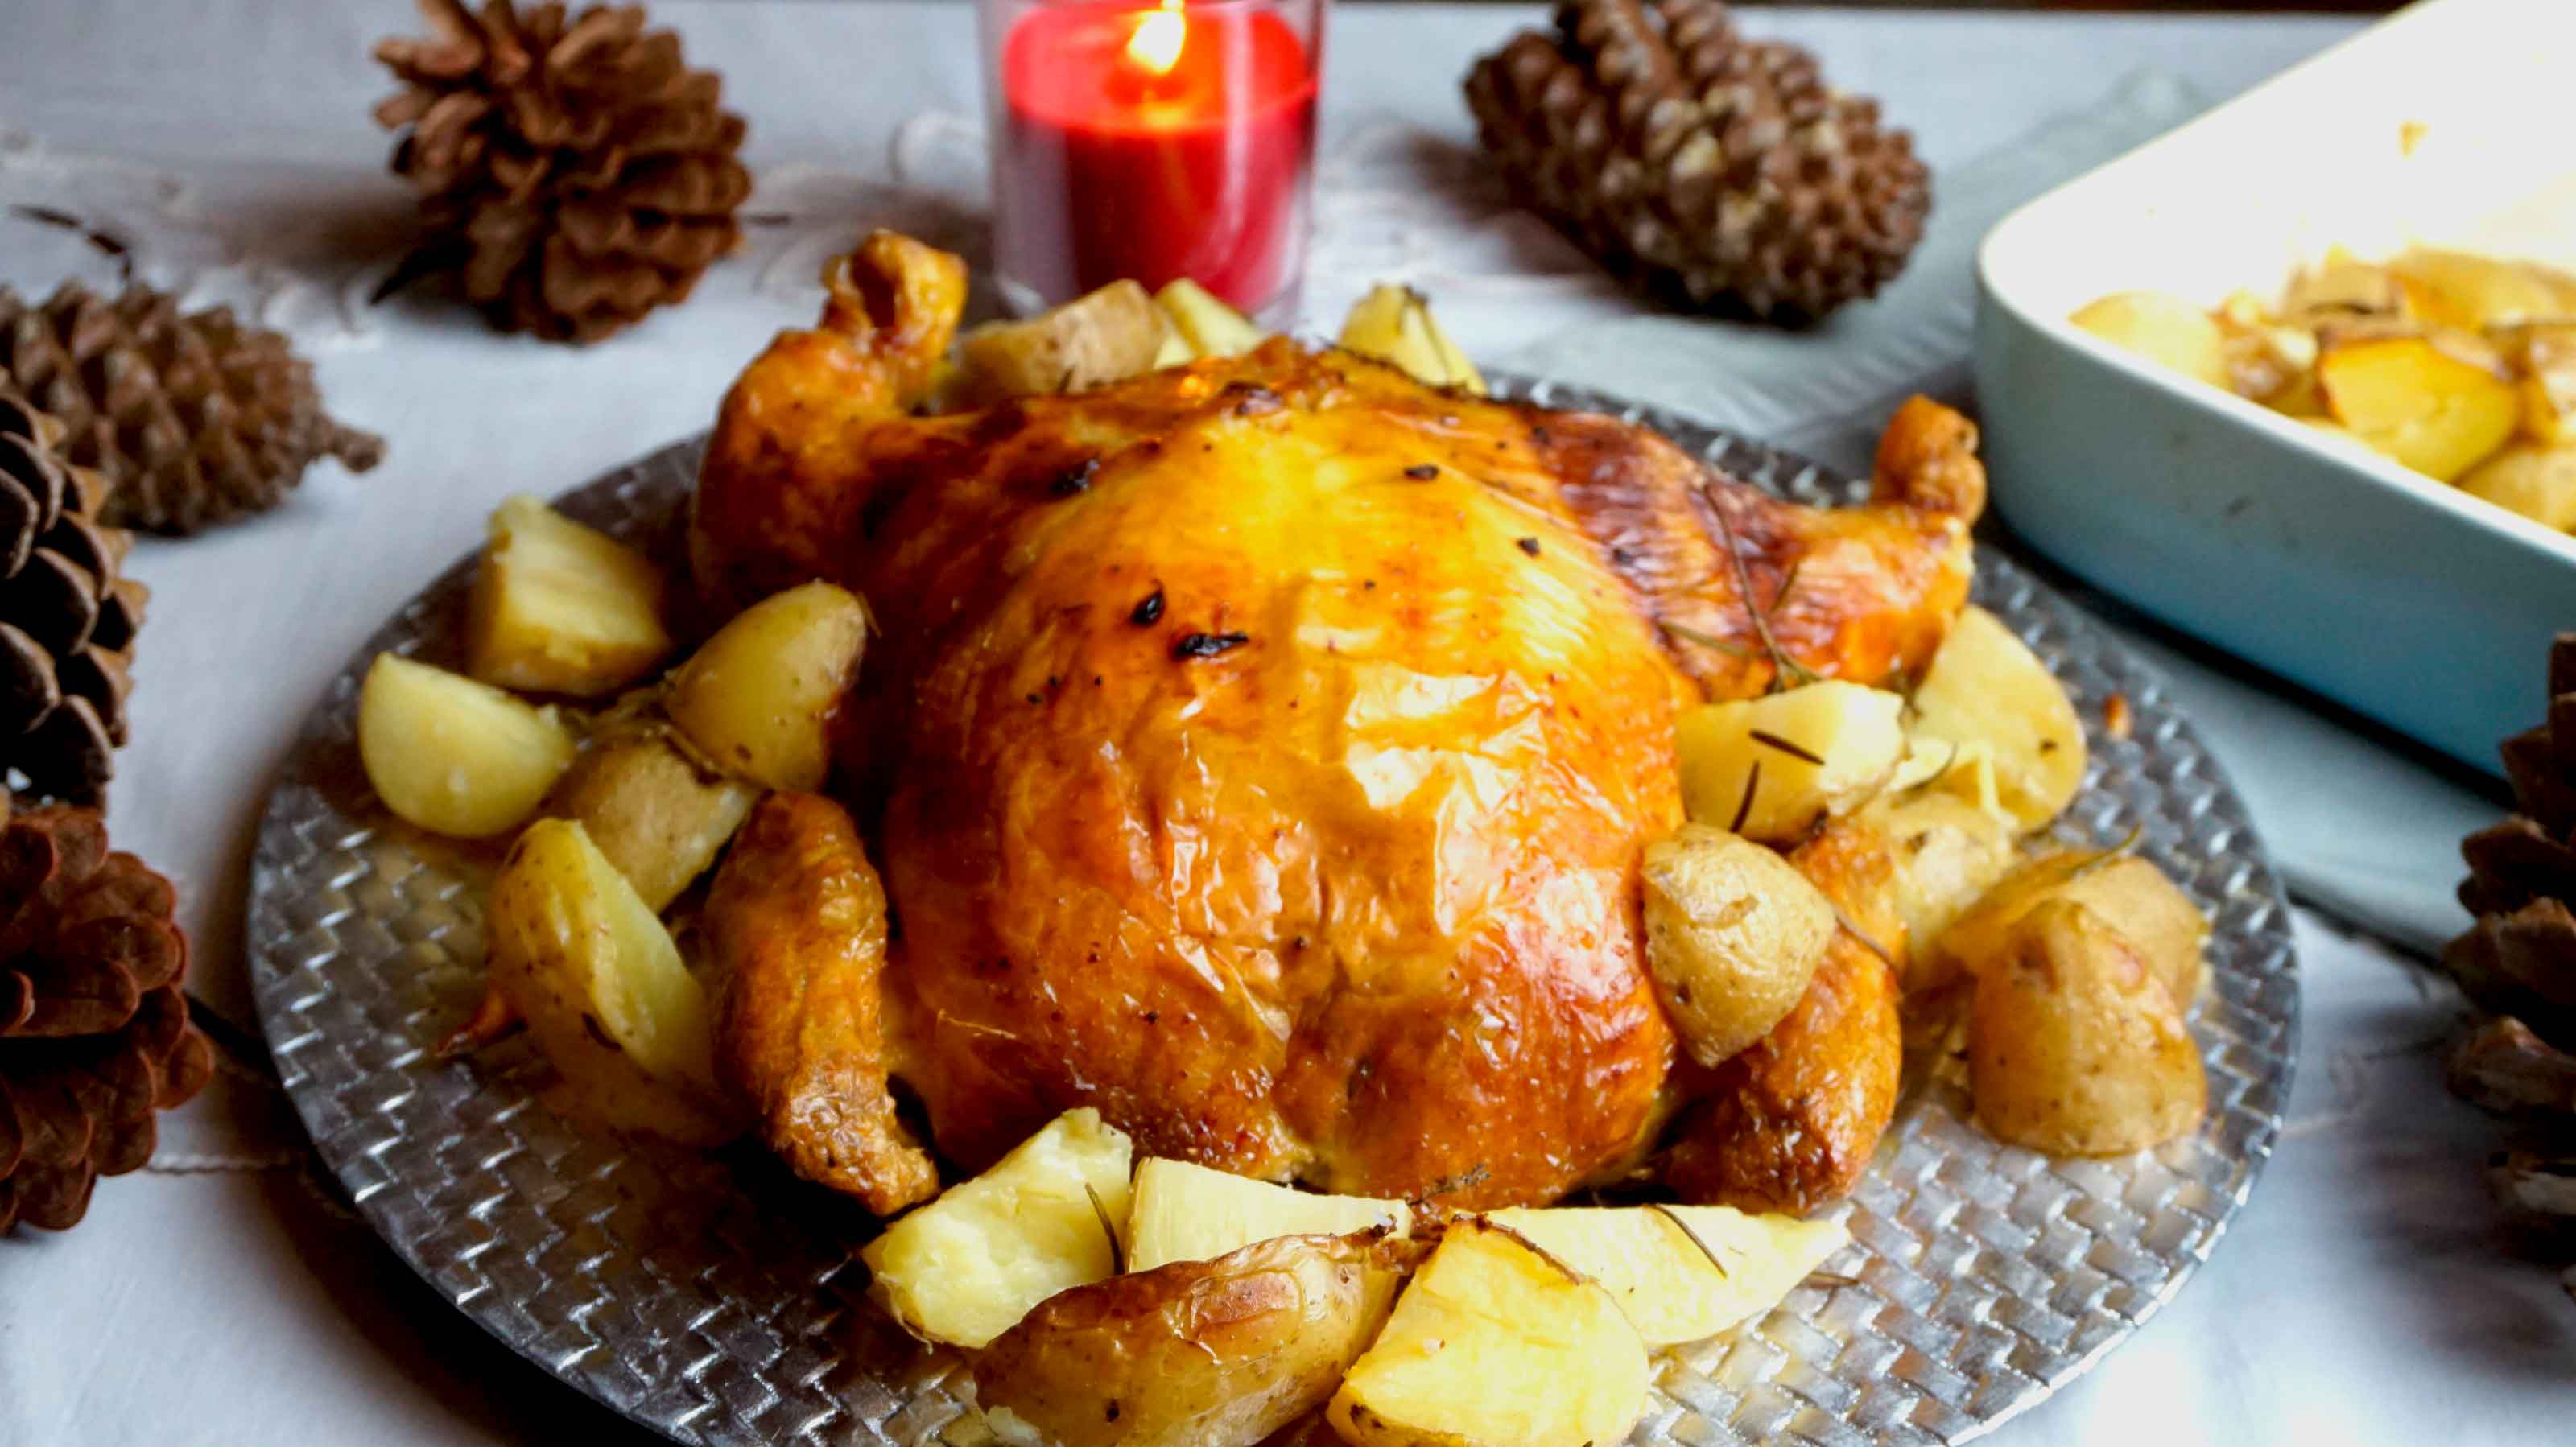 Pollo relleno de navidad -el pollo relleno de mi madre- - - Video receta -  Canal Cocina